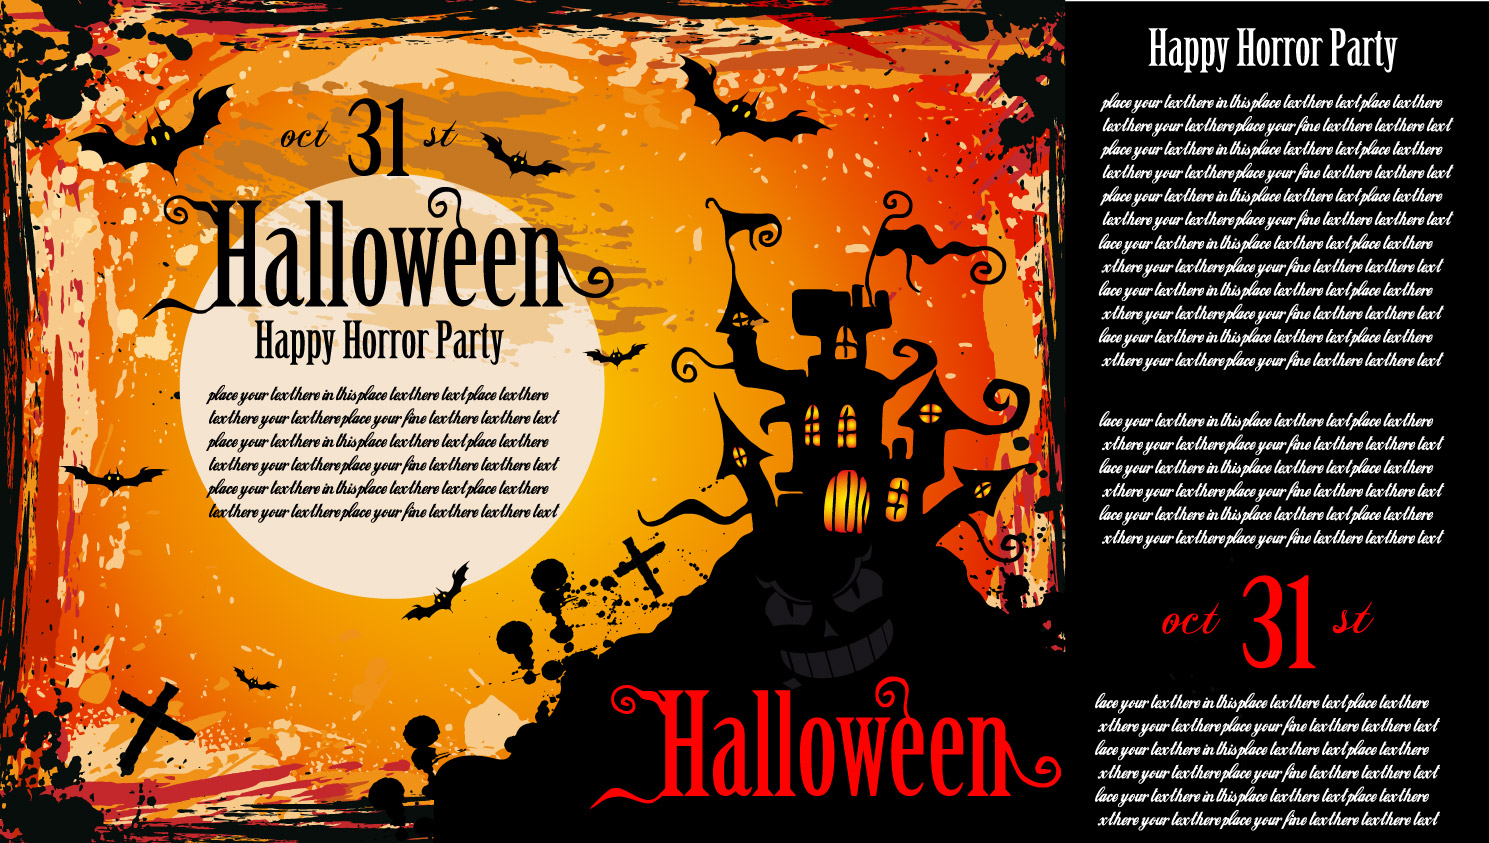 Cartaz de convite para festa de Halloween